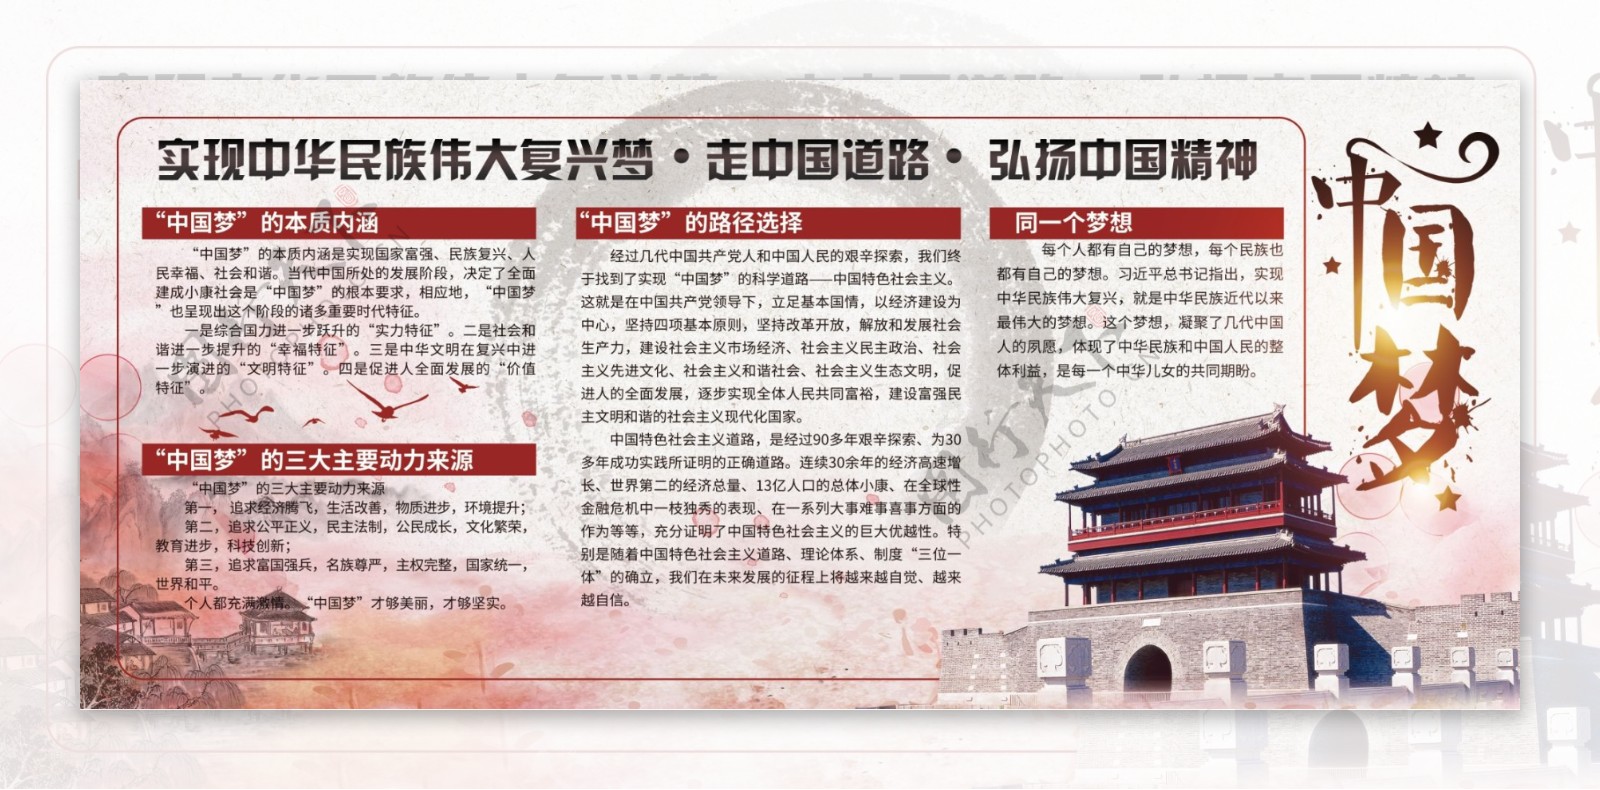 中国风党建中国梦展板设计